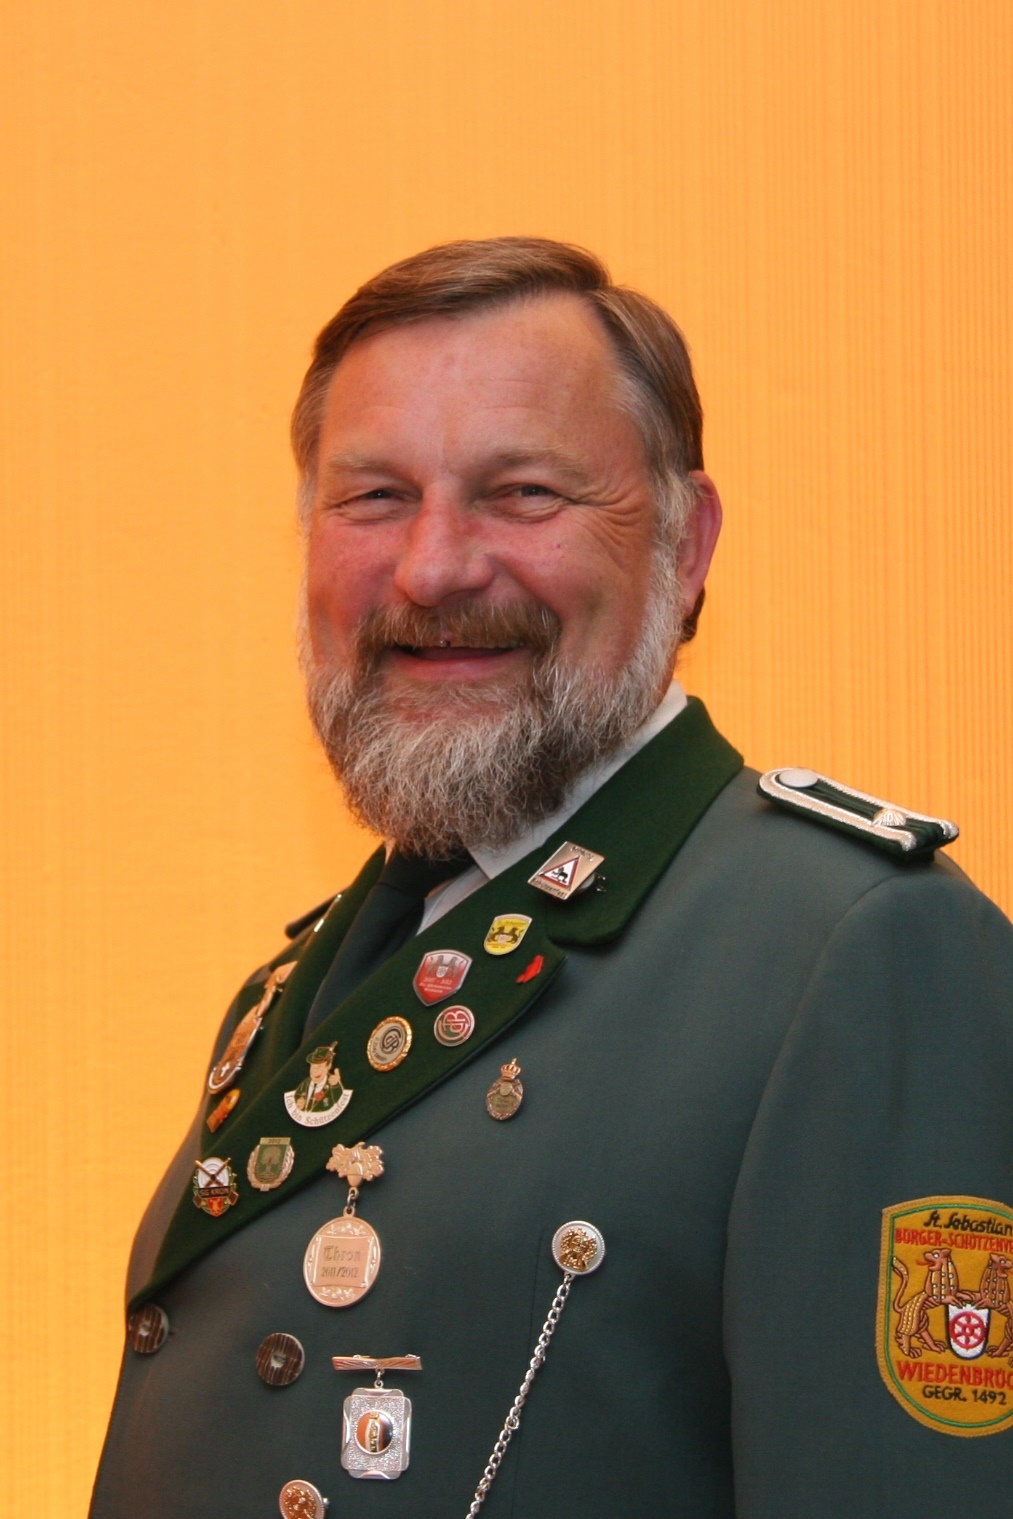 Viktor Altemark